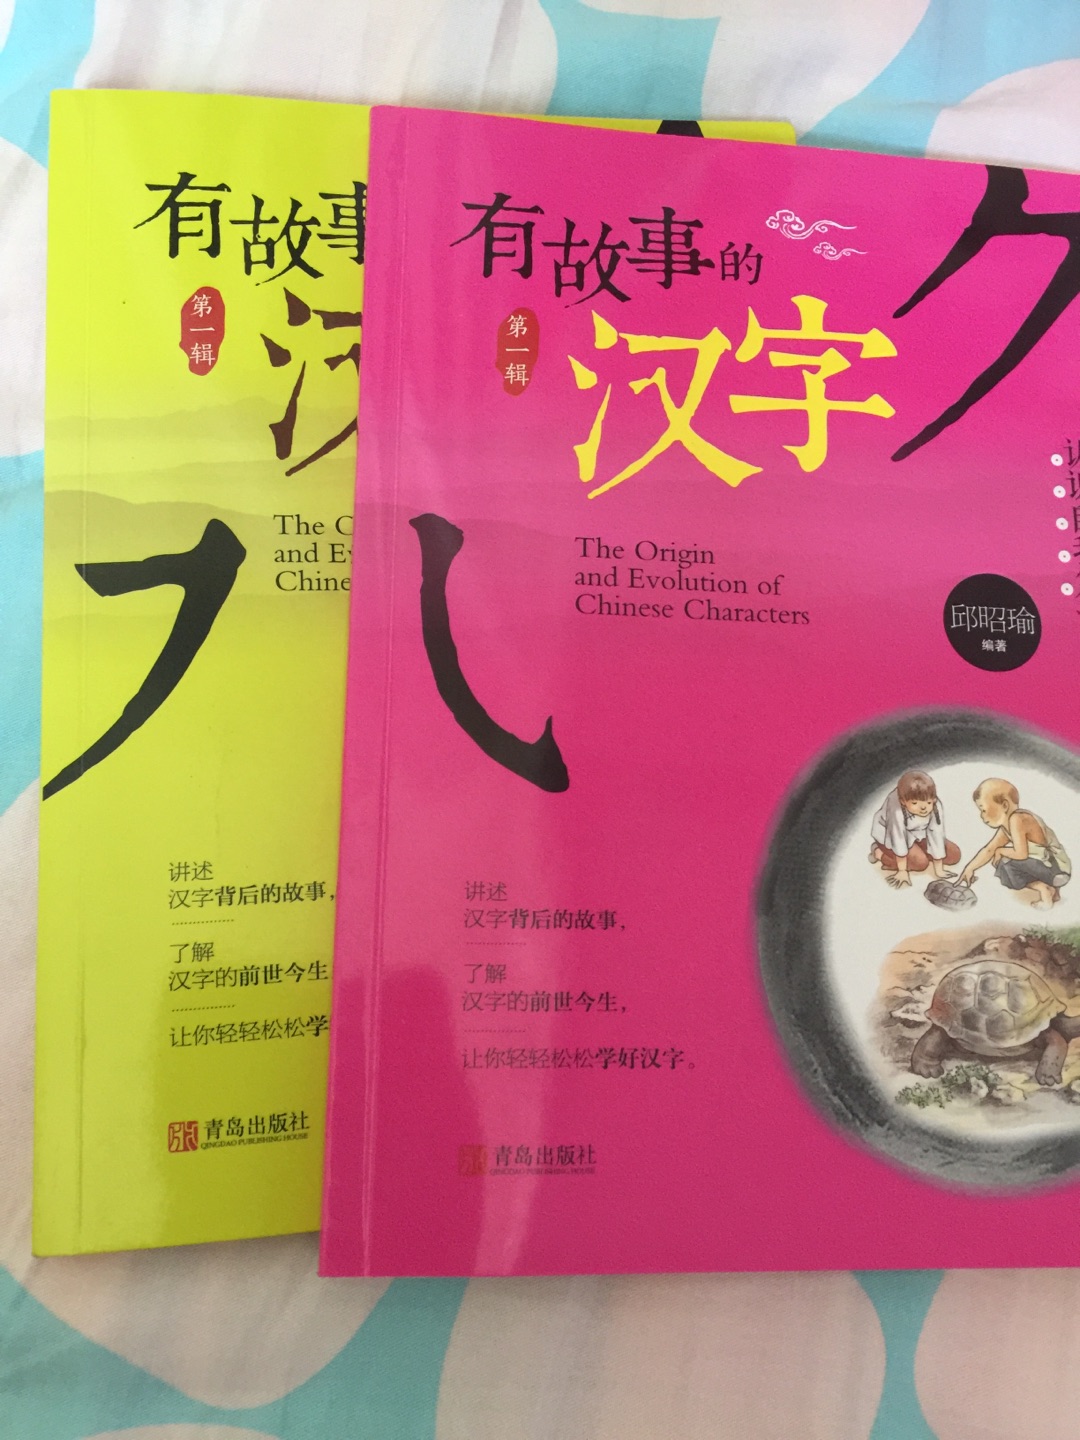 这套书孩子很喜欢，了解很多汉字的故事